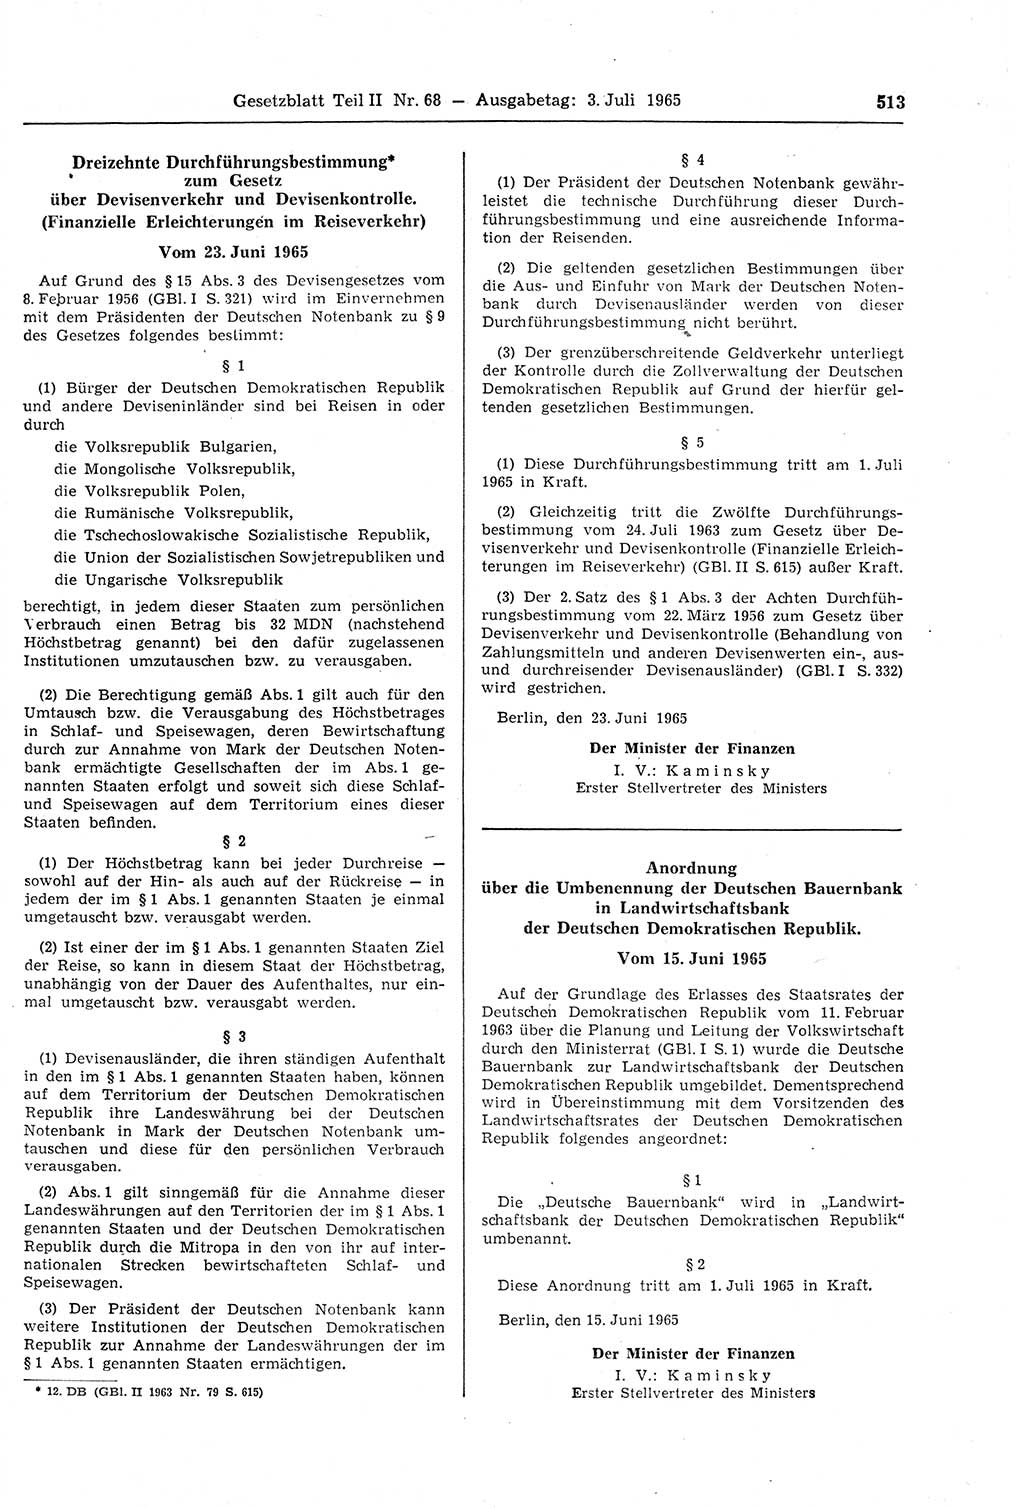 Gesetzblatt (GBl.) der Deutschen Demokratischen Republik (DDR) Teil ⅠⅠ 1965, Seite 513 (GBl. DDR ⅠⅠ 1965, S. 513)